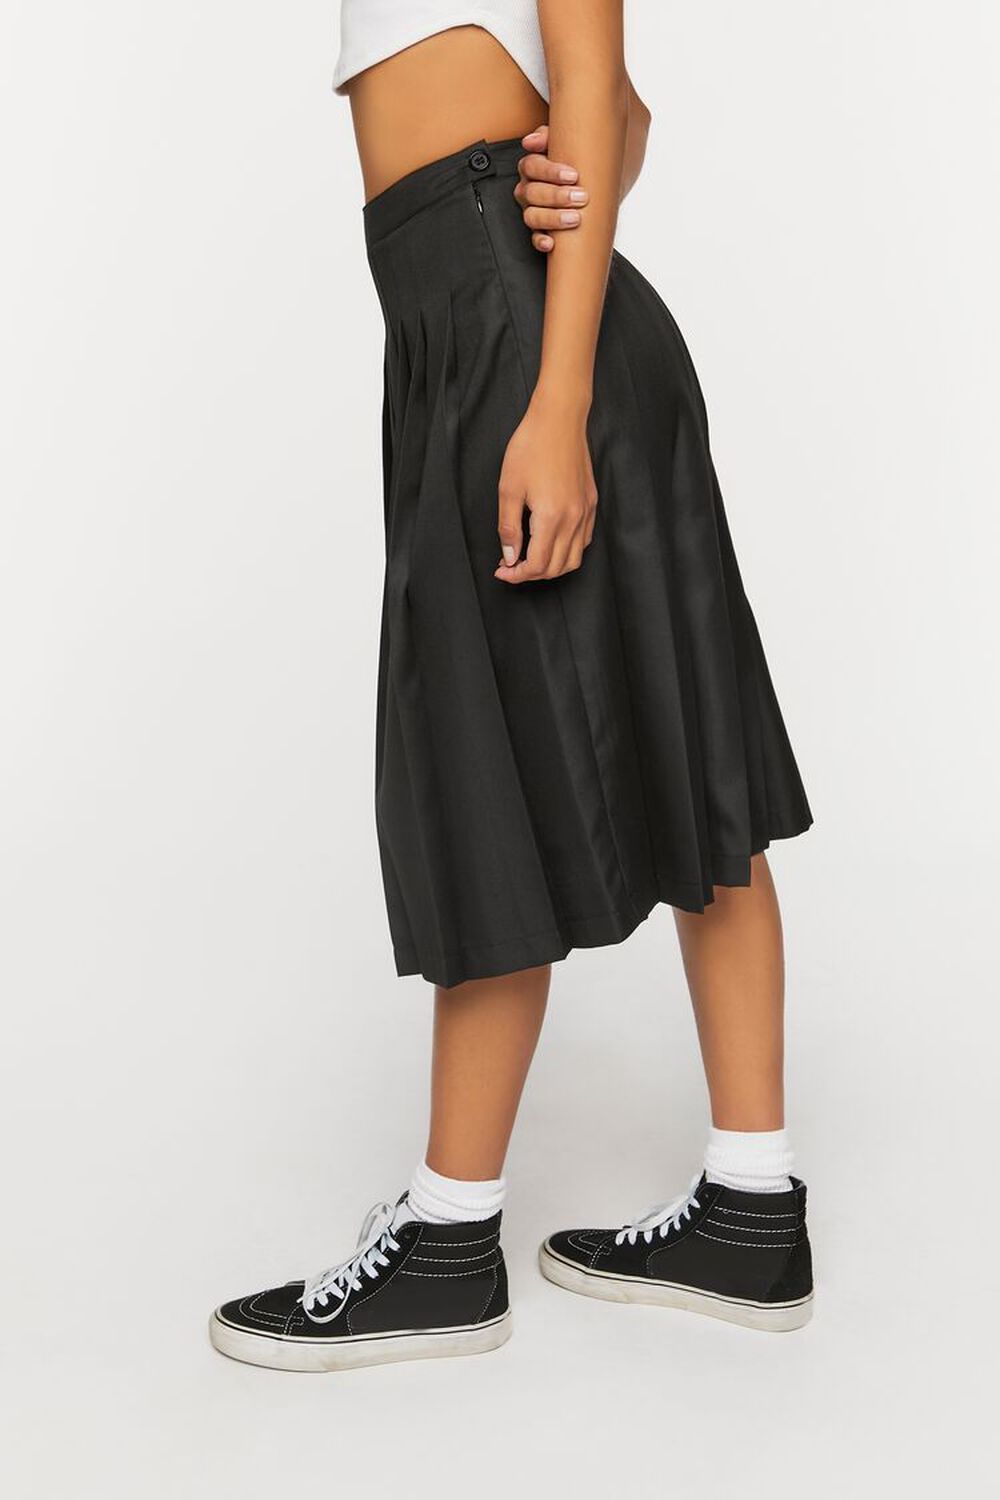 BLACK Pleated A-Line Midi Skirt, image 3